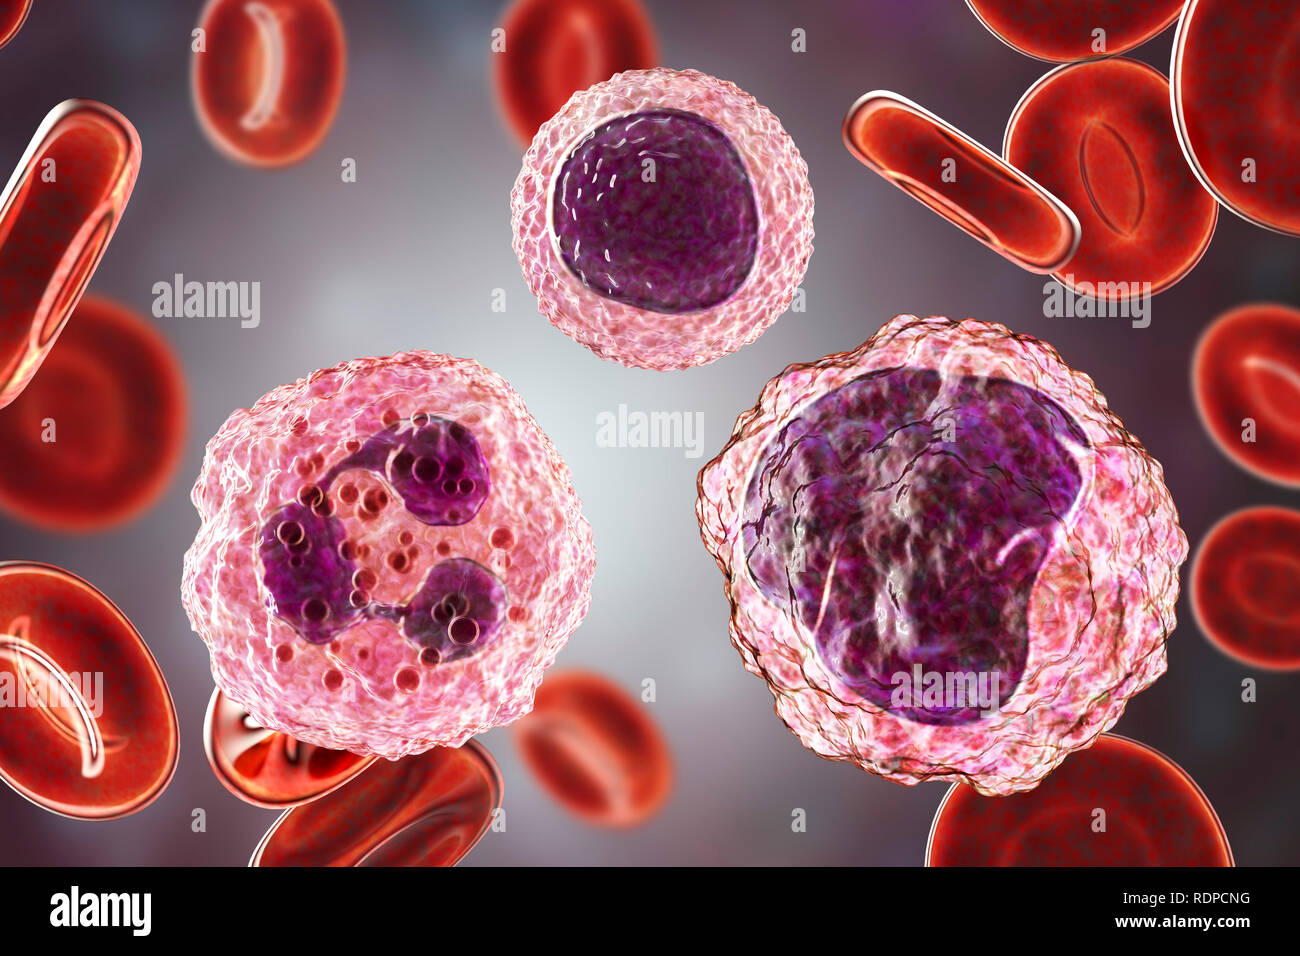 Lymphozyten (Mitte oben), Monozyten und Neutrophile (rechts) (links) weiße Blutkörperchen in einem blutausstrich, computer Abbildung. Lymphozyten sind für die Produktion von Antikörpern beteiligt und angreifenden Virus-infizierten und Tumorzellen. Weiße Blutkörperchen sind Teil des Immunsystems des Körpers. Monozyten sind die größten weißen Blutkörperchen. Sie verschlingen und verdauen sie eindringende Bakterien und Schmutz. Neutrophils sind die häufigsten weißen Blutzellen. Sie verschlingen und verdauen sie eindringende Bakterien. Lymphozyten sind für die Produktion von Antikörpern beteiligt und angreifenden Virus-infizierten und Tumorzellen. Stockfoto